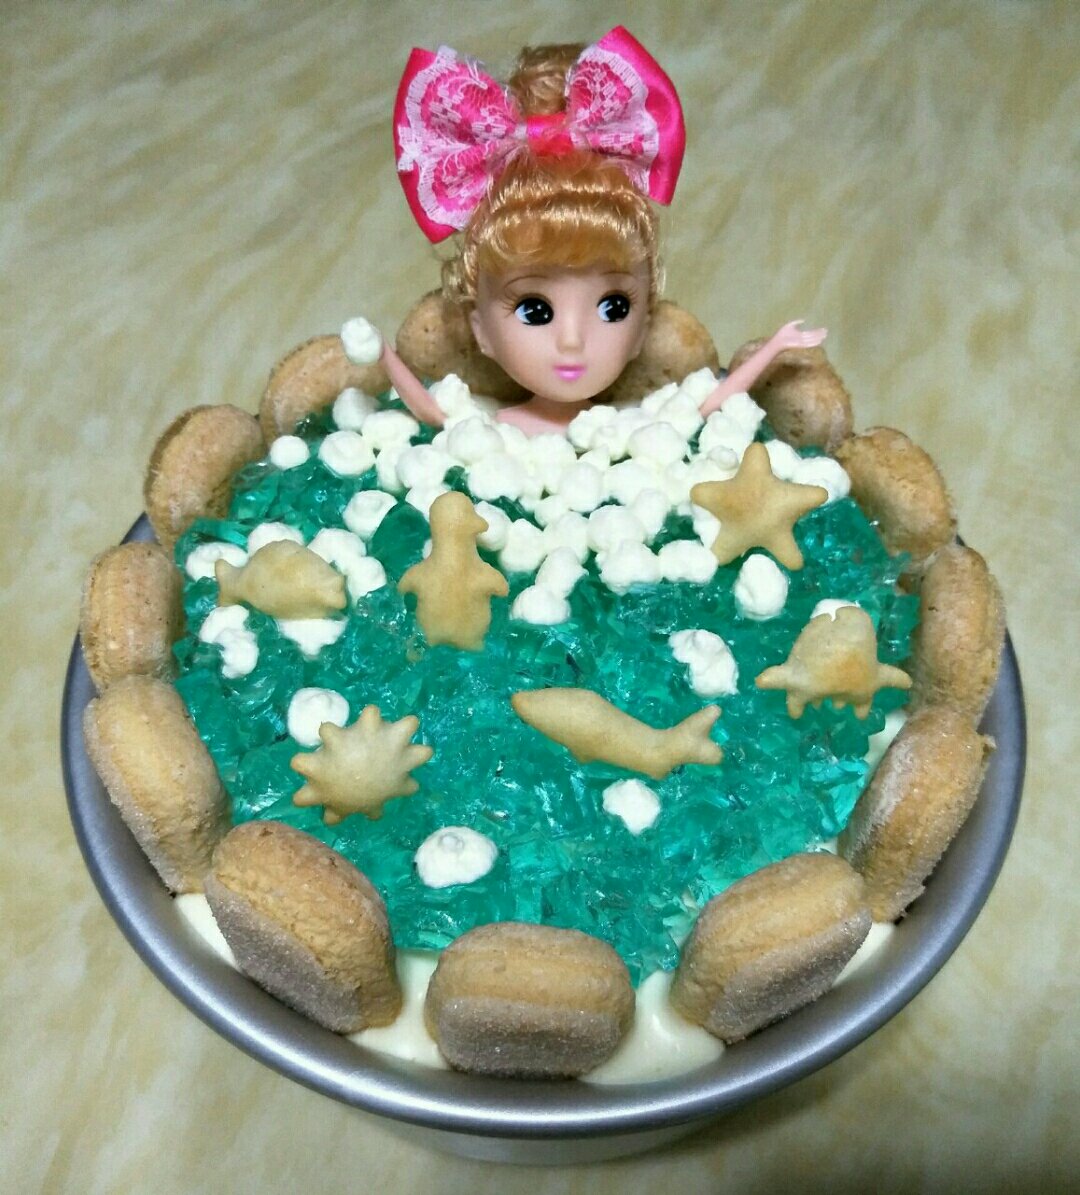 娃娃海洋泡浴慕斯蛋糕（8寸）